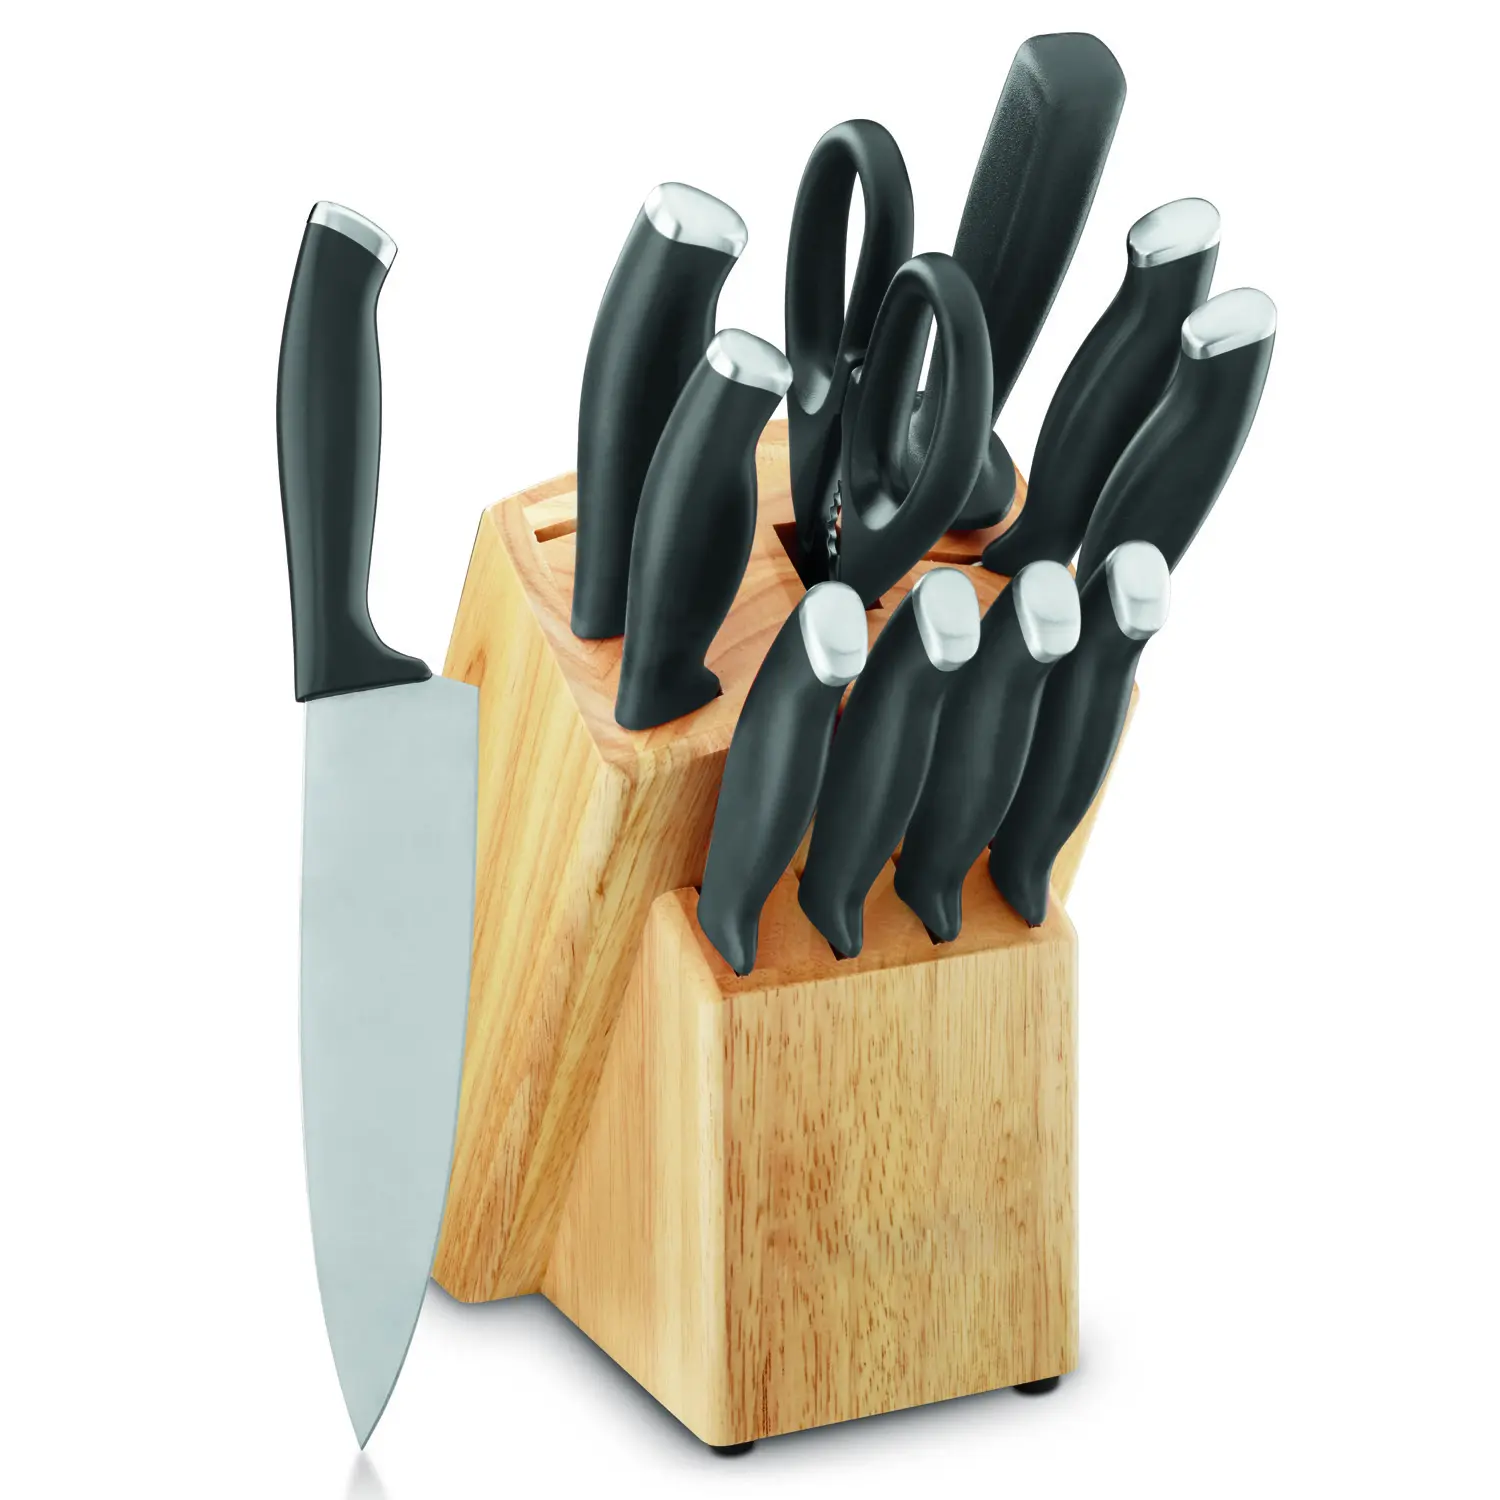 طقم سكاكين ملونة من 12 قطعة من JINYU مصنوعة من الفولاذ المقاوم للصدأ طقم سكاكين طبخ وأدوات مائدة مع مقص ومبراة ومربع مطبخ وقطعة خشبية